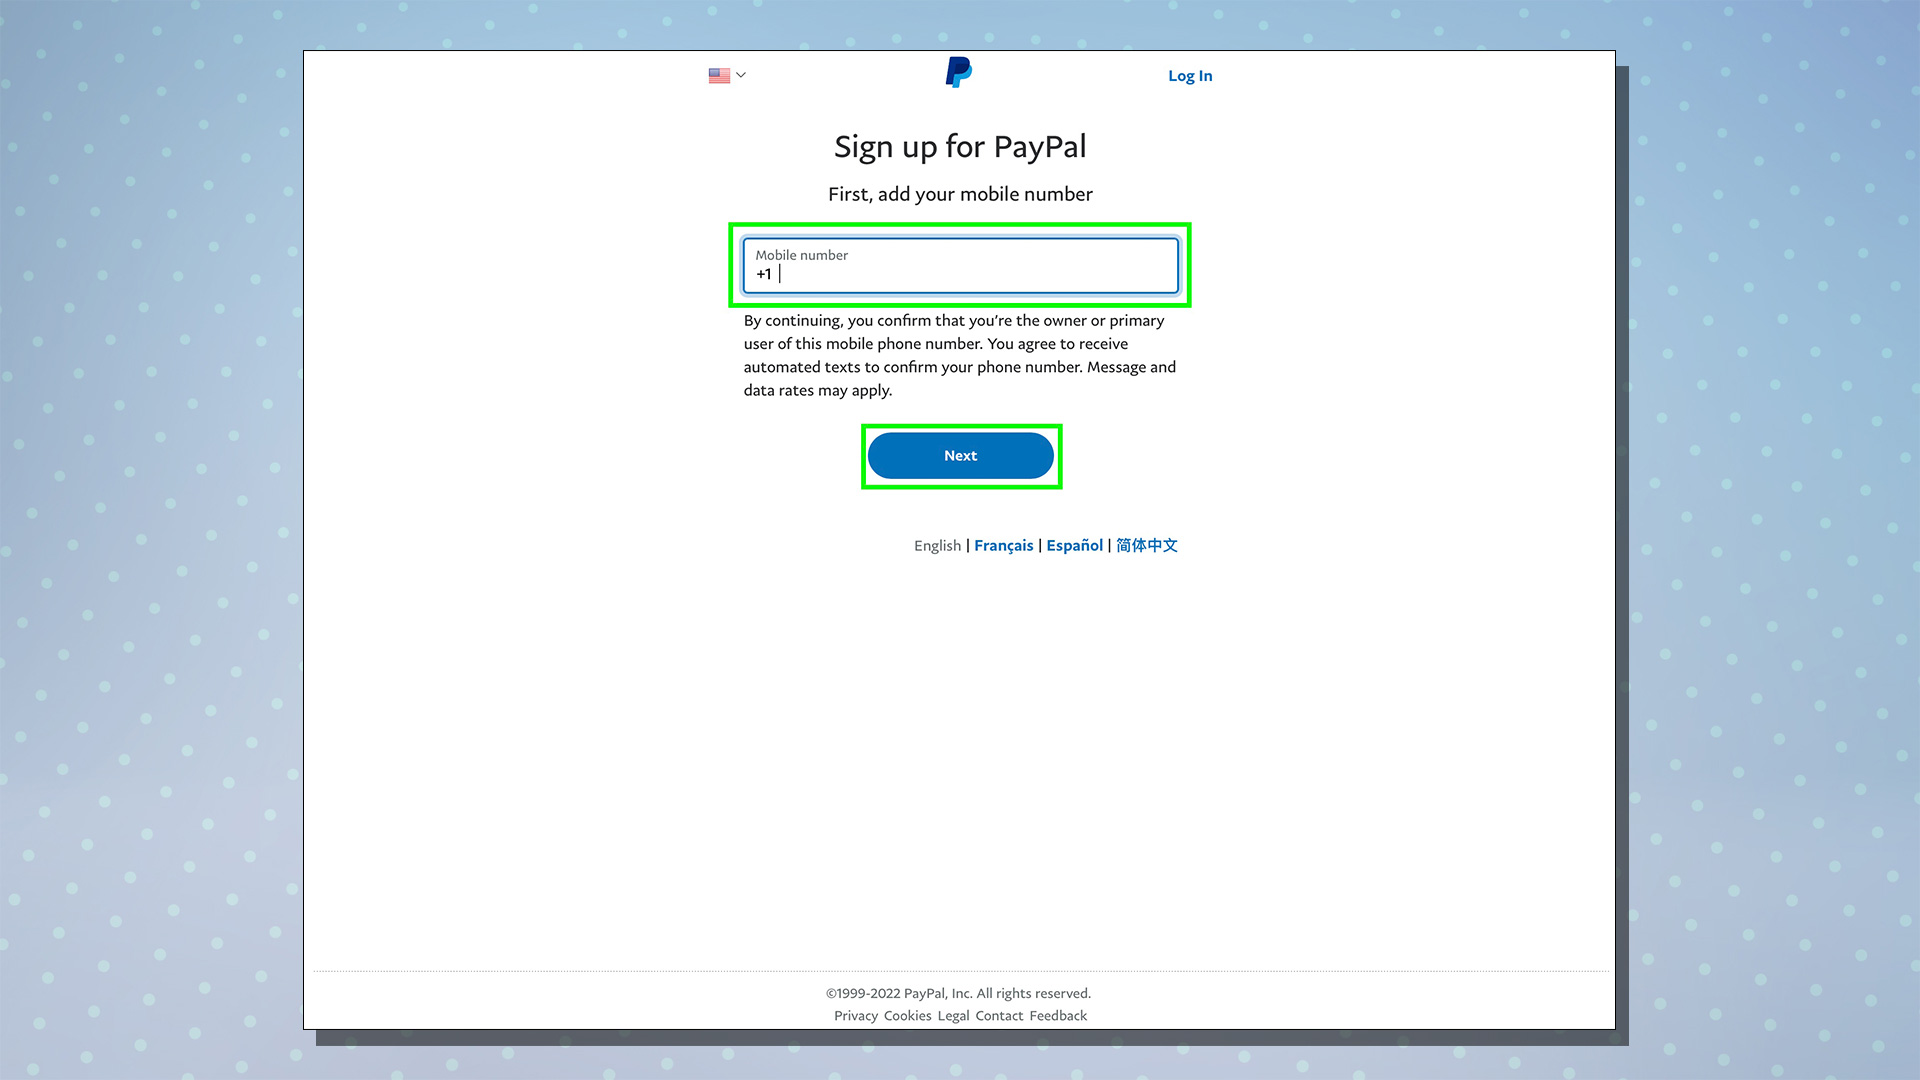 PayPal kurulum sürecini gösteren bir ekran görüntüsü.  Bu ekran cep telefonu numarası diyaloğunu gösterir